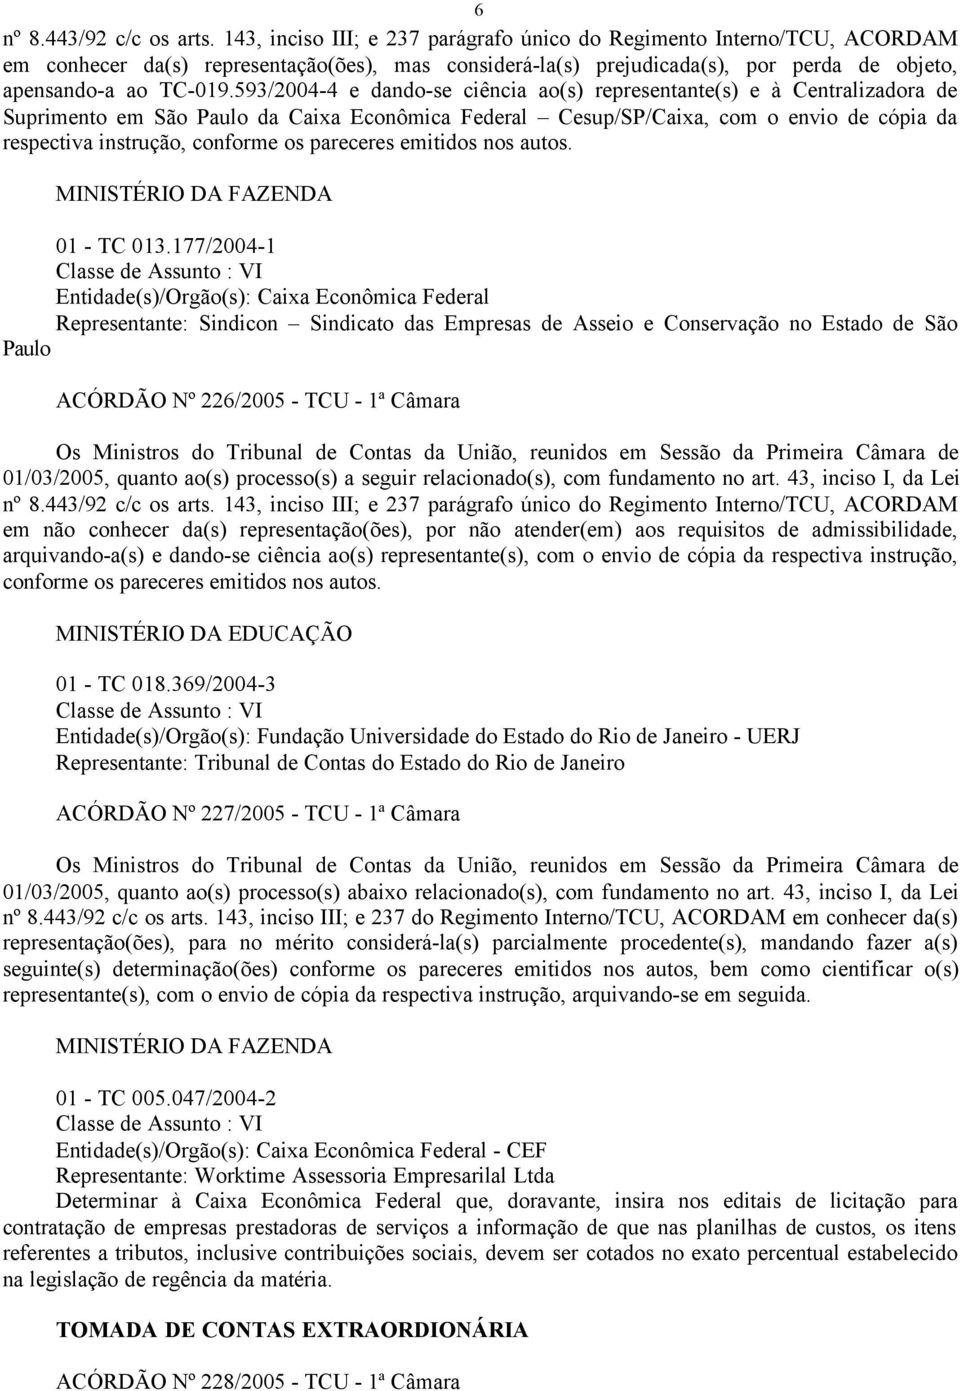 593/2004-4 e dando-se ciência ao(s) representante(s) e à Centralizadora de Suprimento em São Paulo da Caixa Econômica Federal Cesup/SP/Caixa, com o envio de cópia da respectiva instrução, conforme os